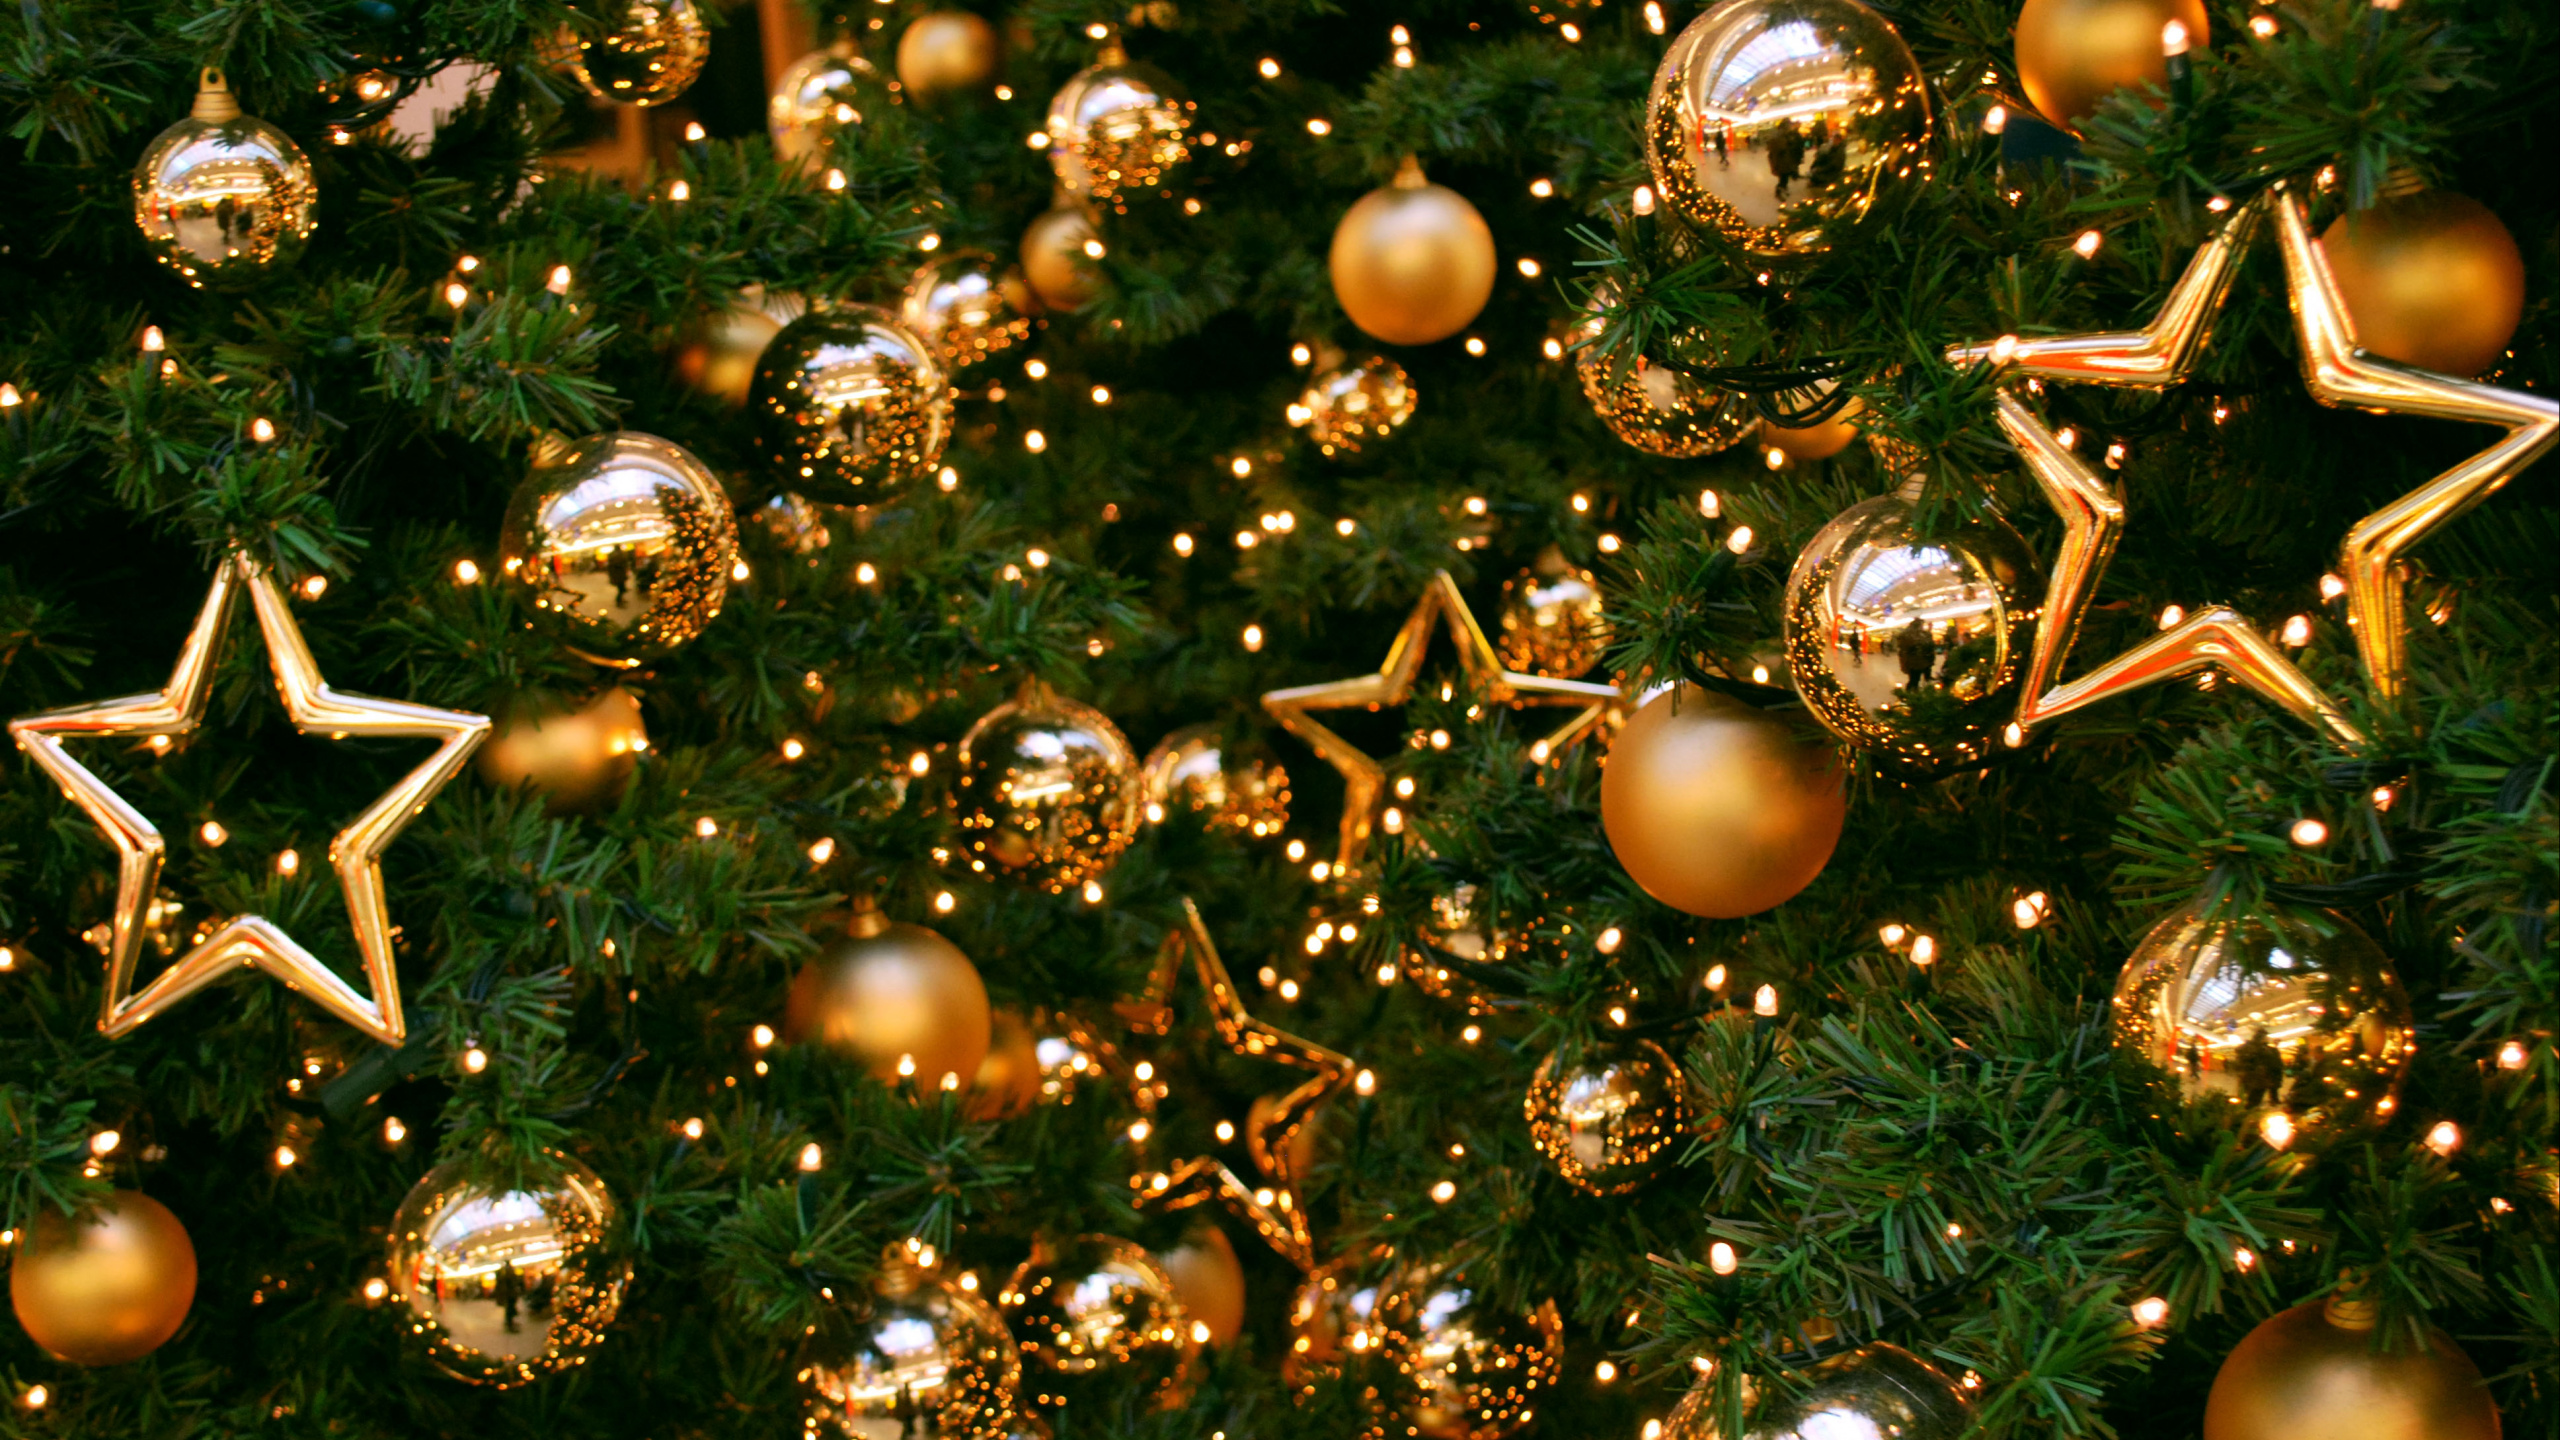 Weihnachtsbaum, Weihnachten, Christmas Ornament, Neujahr, Weihnachtsdekoration. Wallpaper in 2560x1440 Resolution